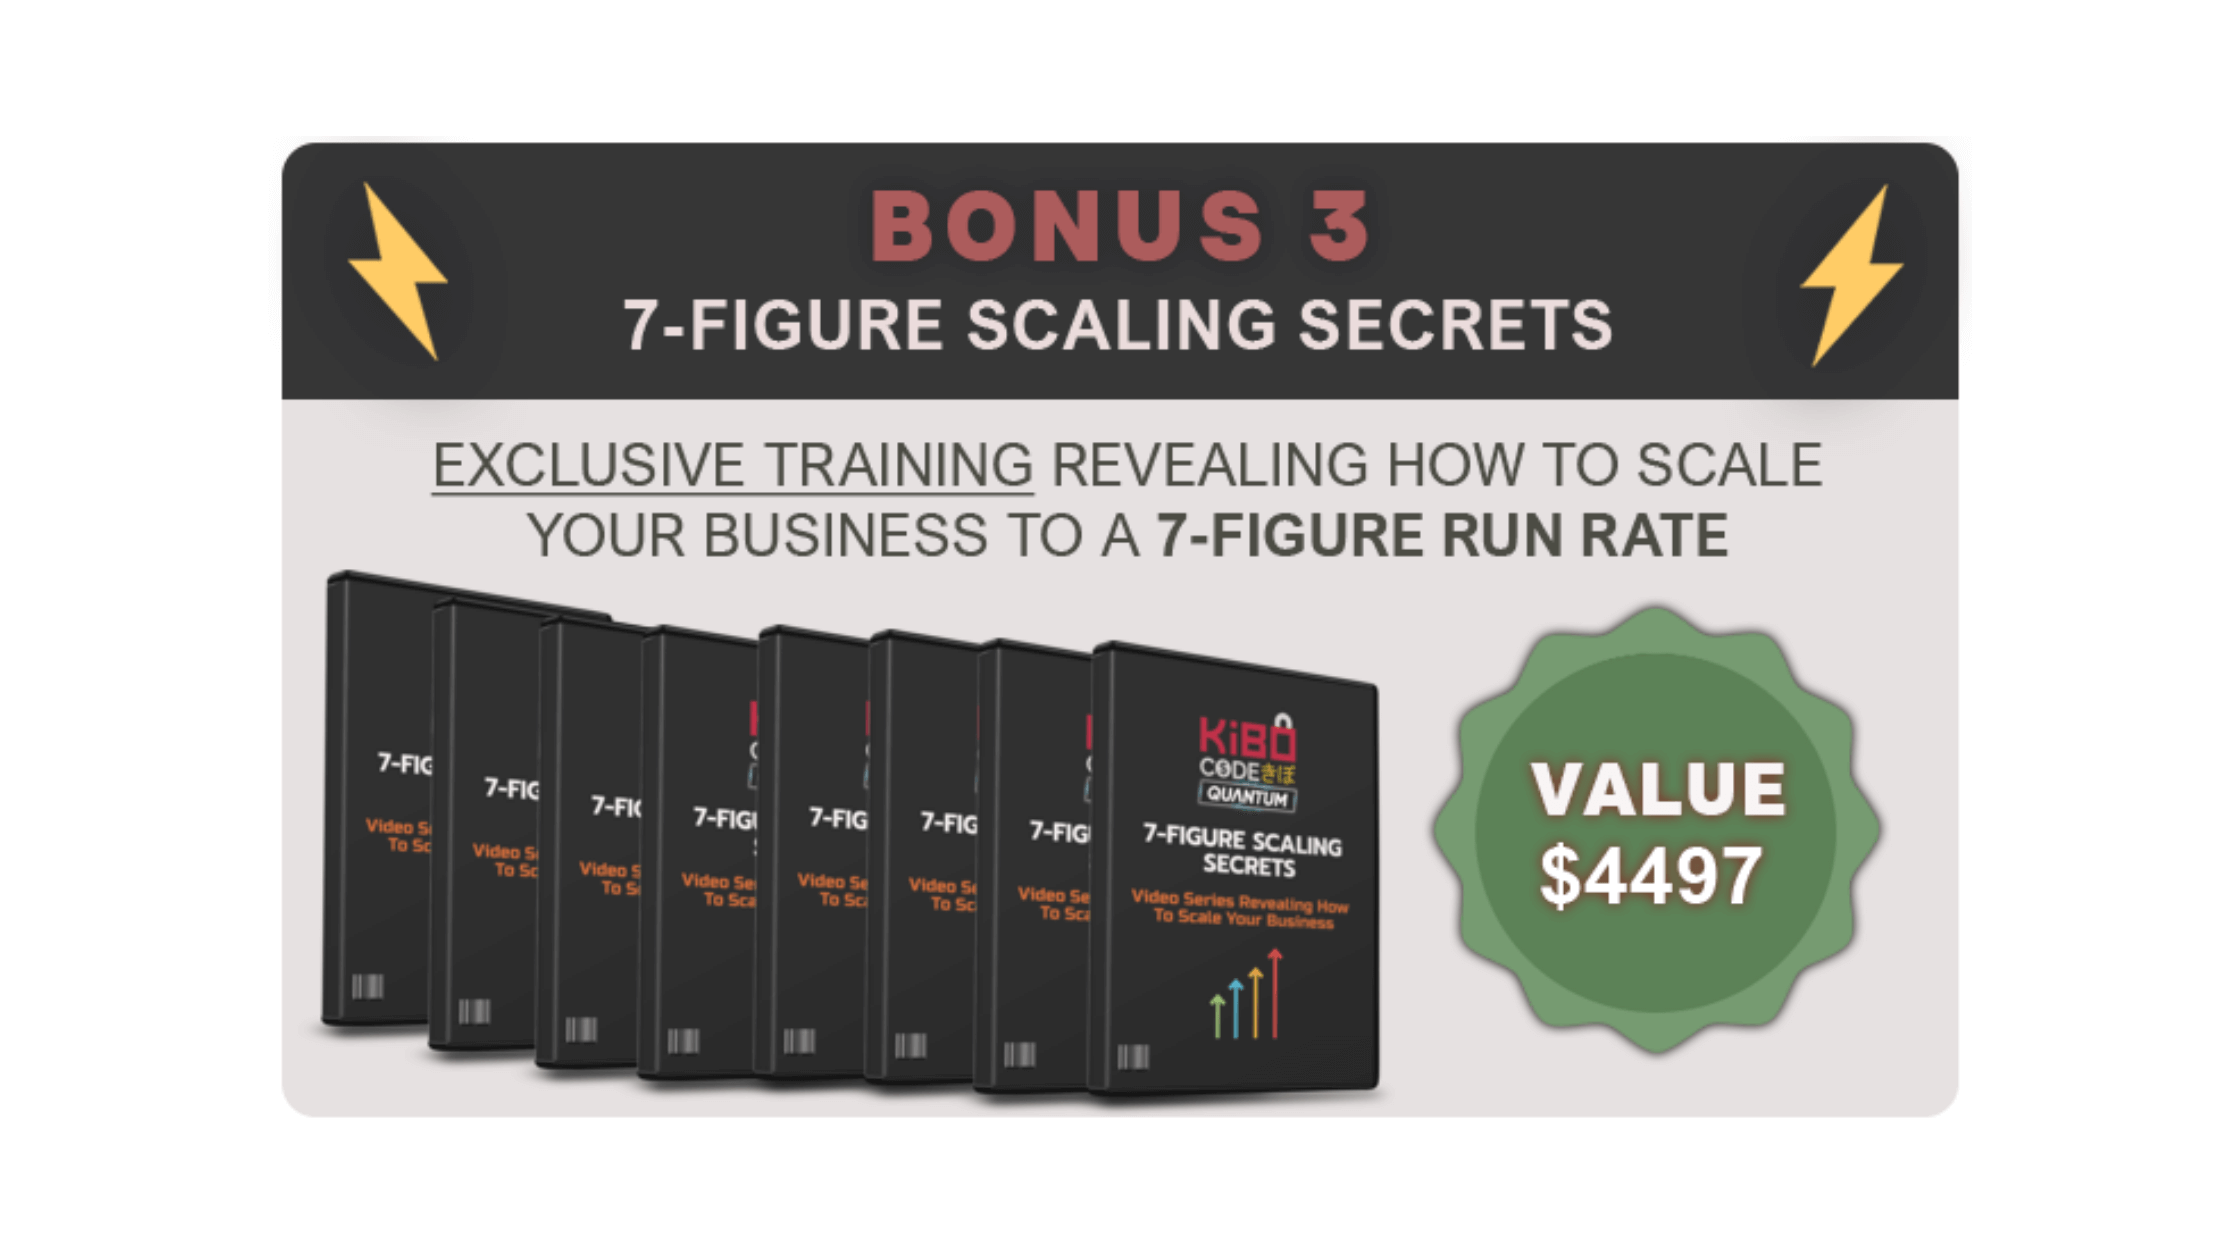 7-figure scaling secrets